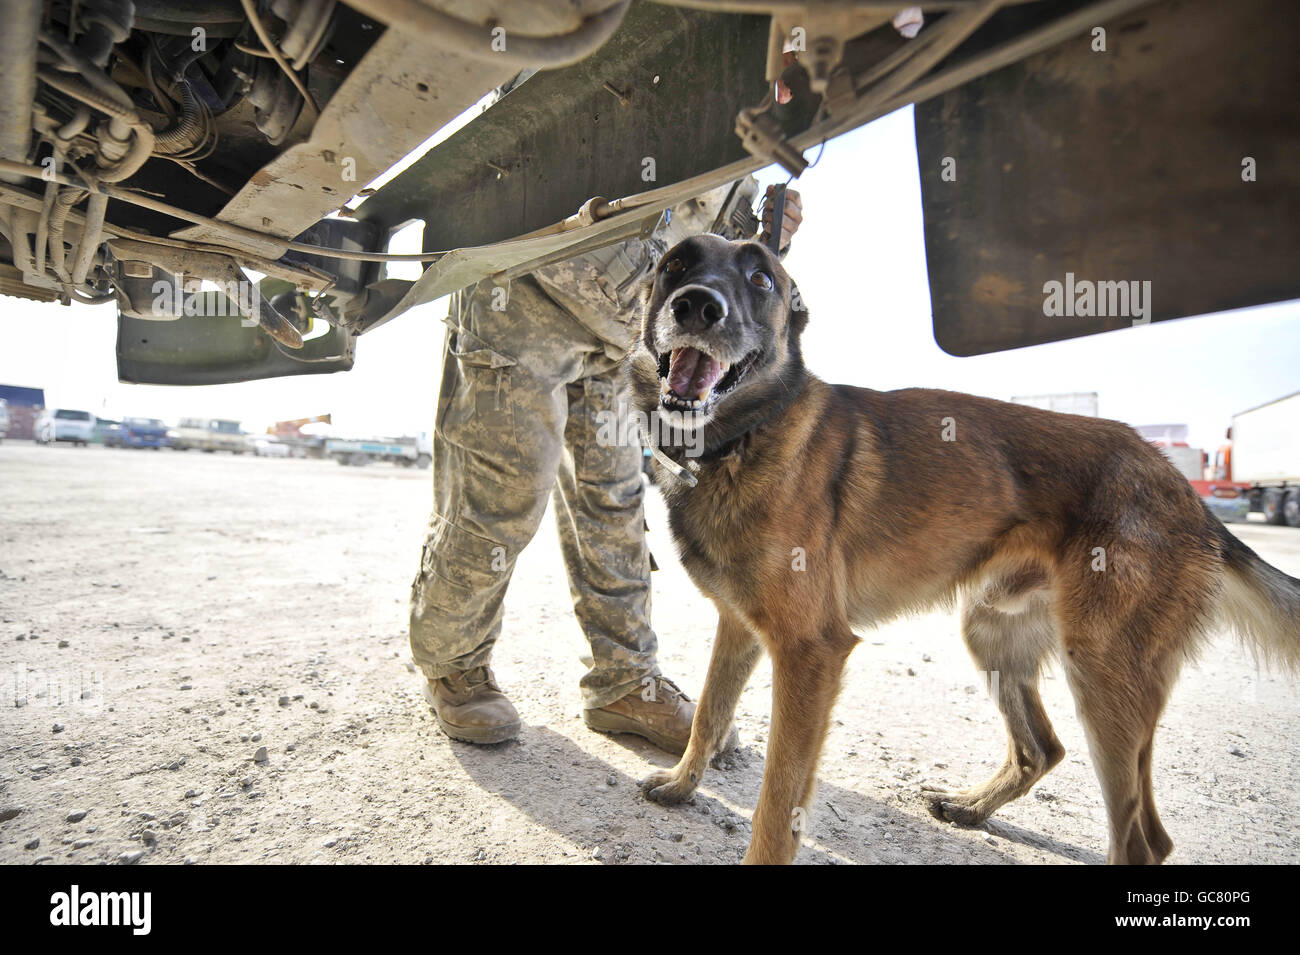 Braum le chien belge de détection de la bombe malinois court autour du dessous d'un camion afghan avec son maître Adel Briones près d'un point de contrôle de véhicule sur l'aérodrome de Kandahar, dans la province de Kandahar, en Afghanistan. Banque D'Images